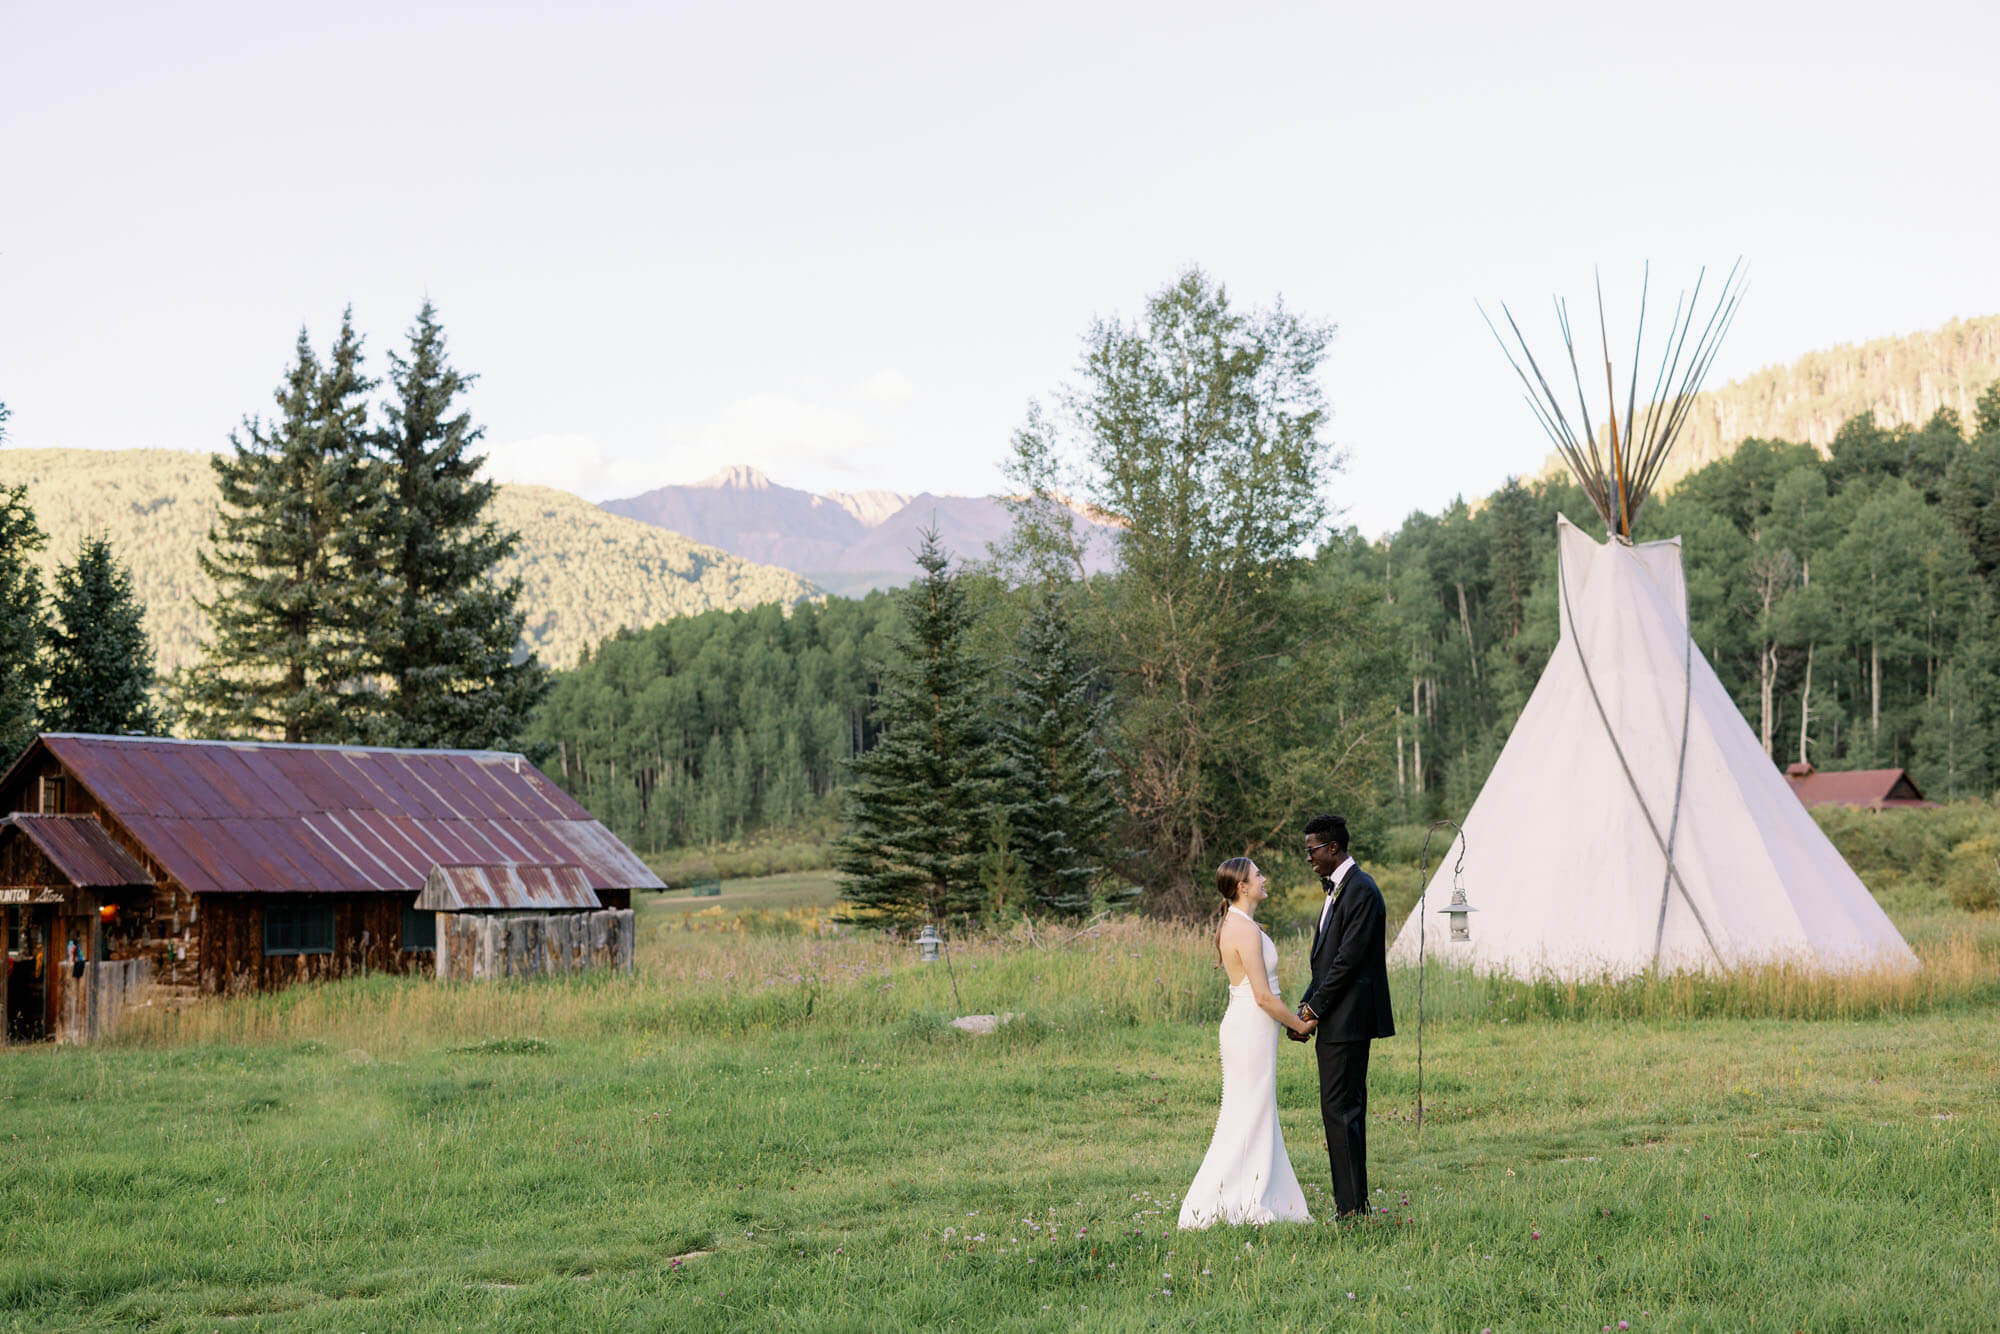 Dunton Hotsprings Wedding in Telluride phototgraphed by Tara Marolda